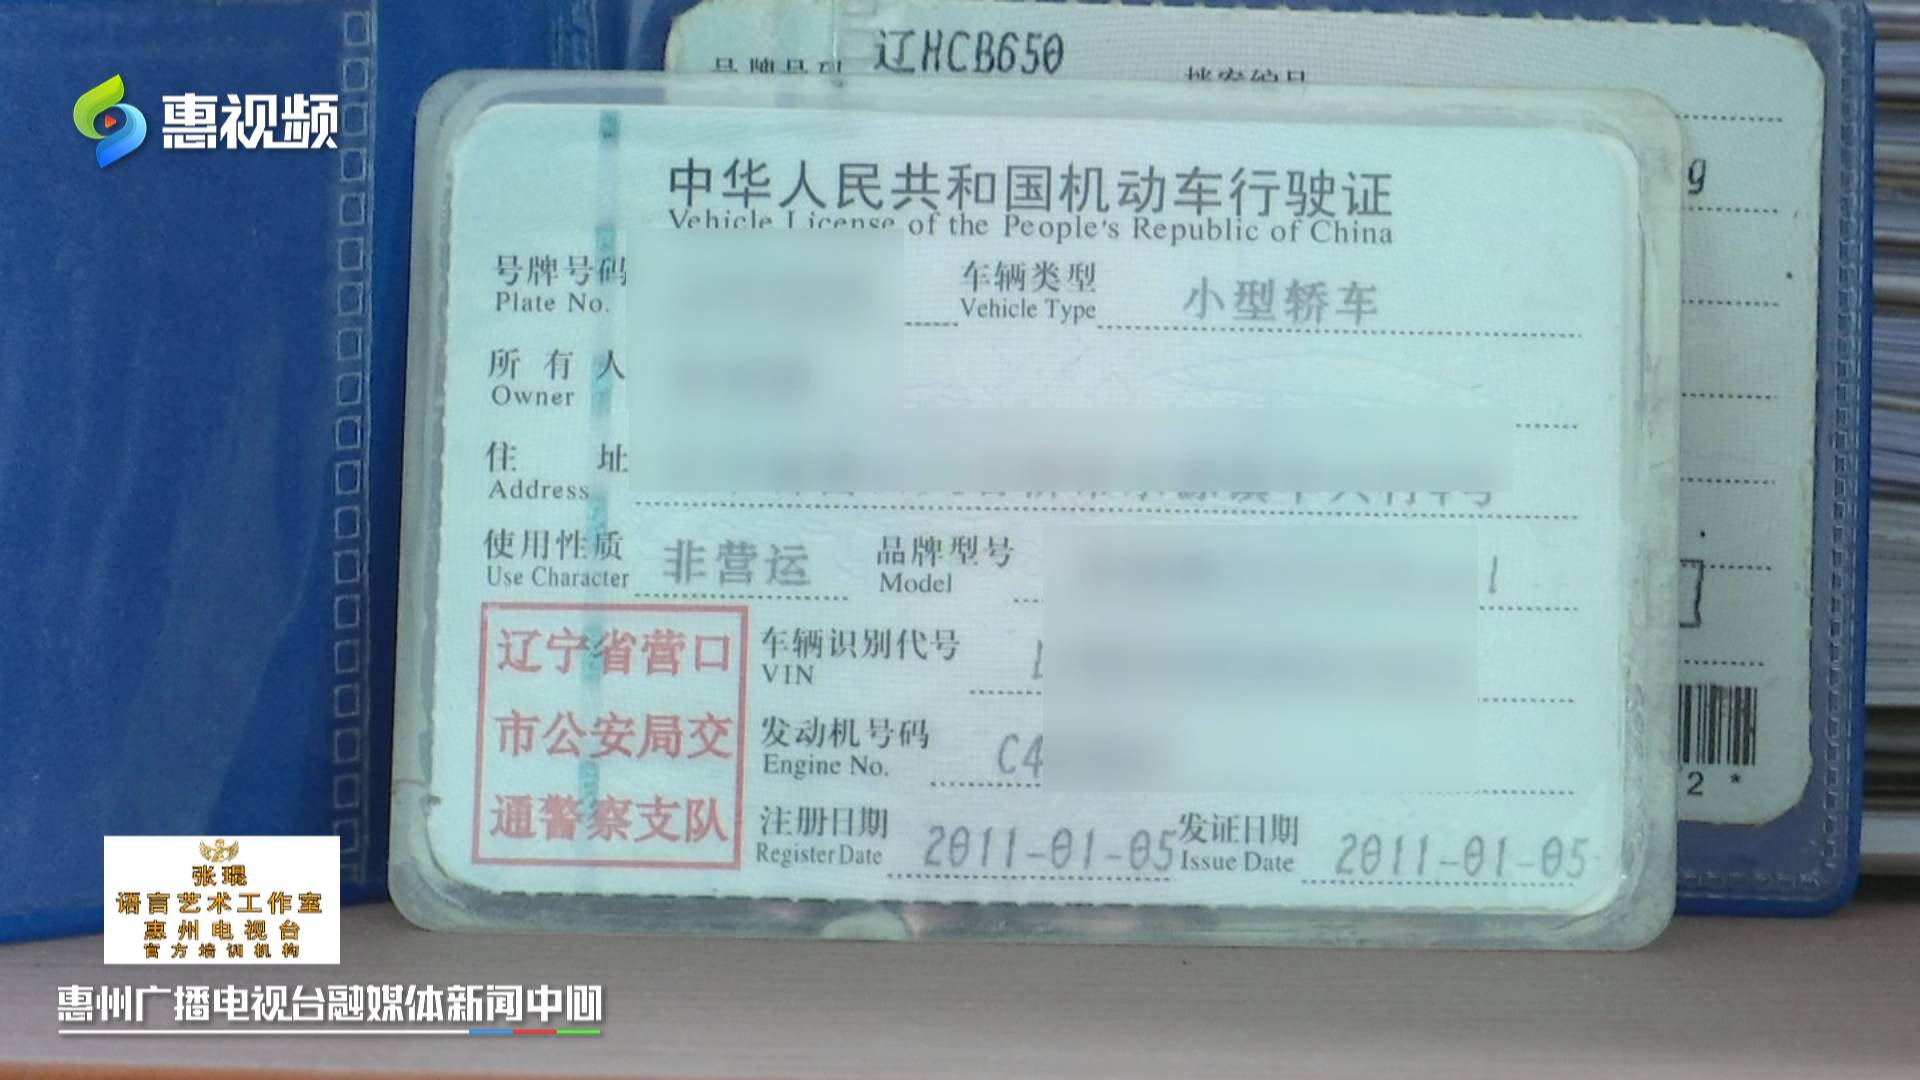 惠州 二手车刚用几天就被盗,连车带现金损失十多万,查监控发现事有蹊跷